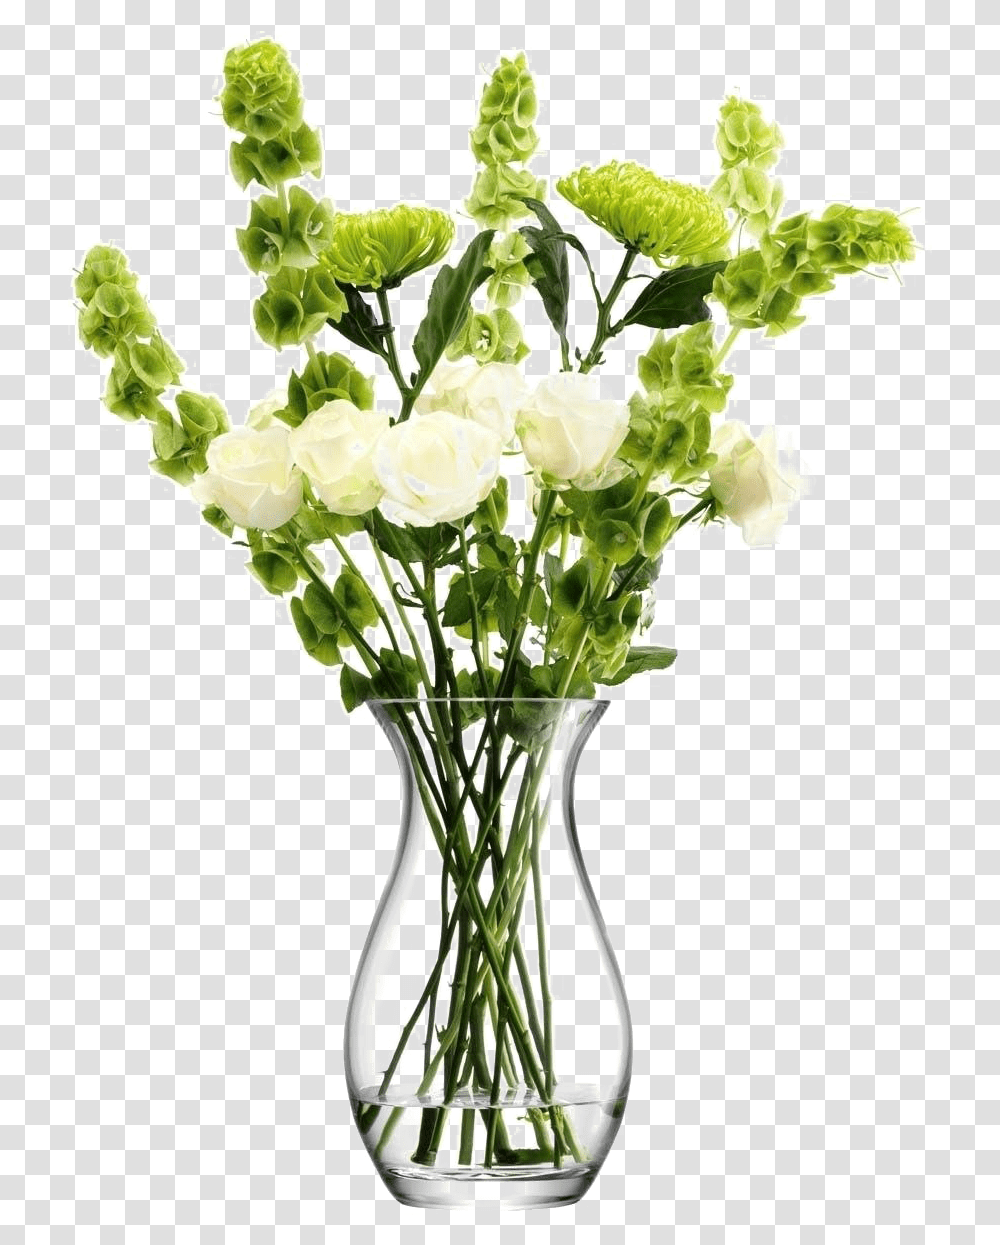 Flower Vase Image Background Vase With Flowers, Plant, Blossom, Flower Arrangement, Jar Transparent Png